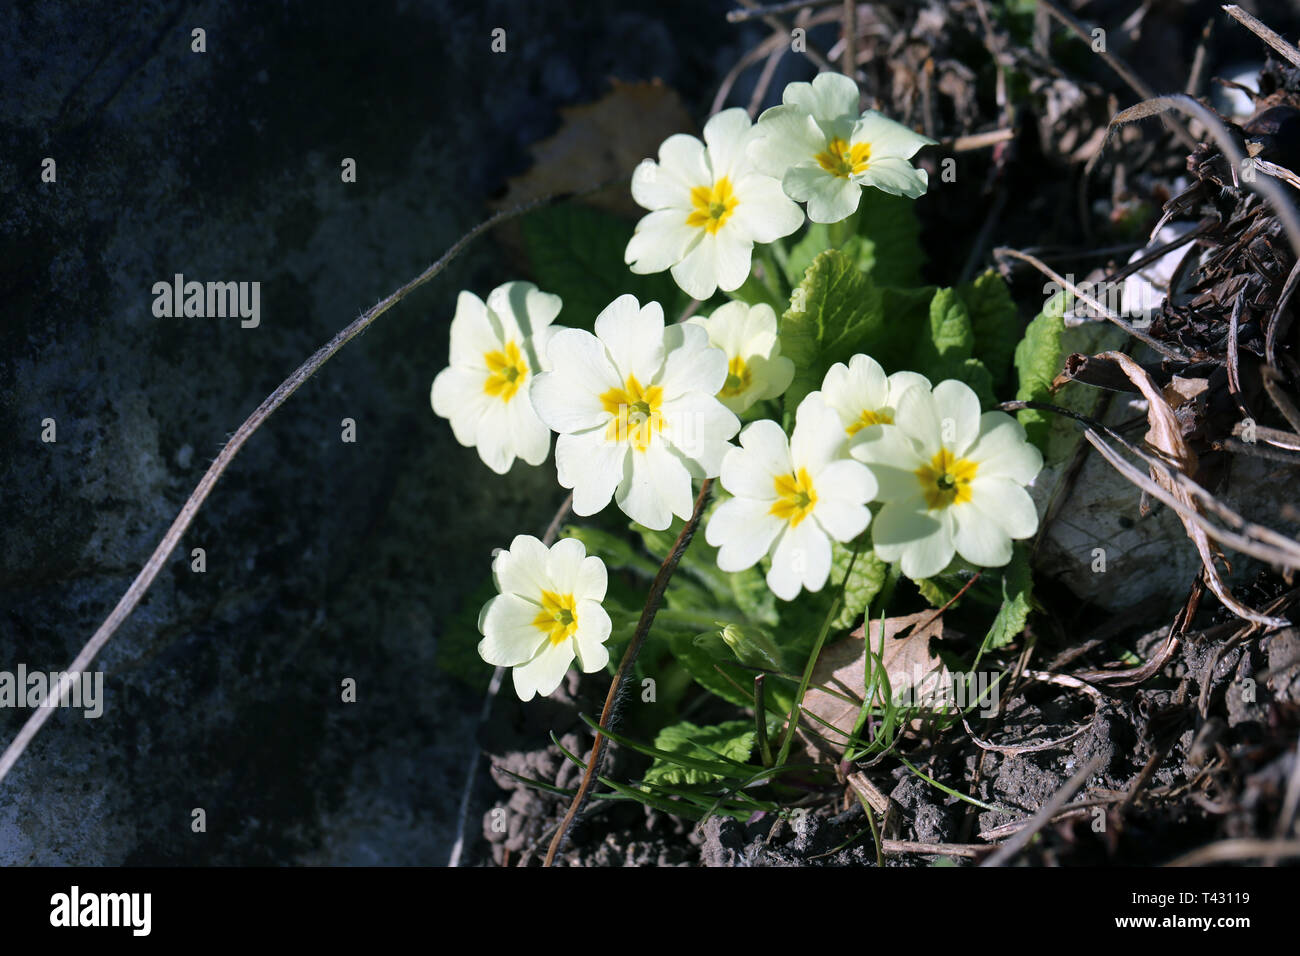 Auflösung zentren -Bildmaterial weiße – gelben mit blüten in und Alamy Kleine -Fotos hoher